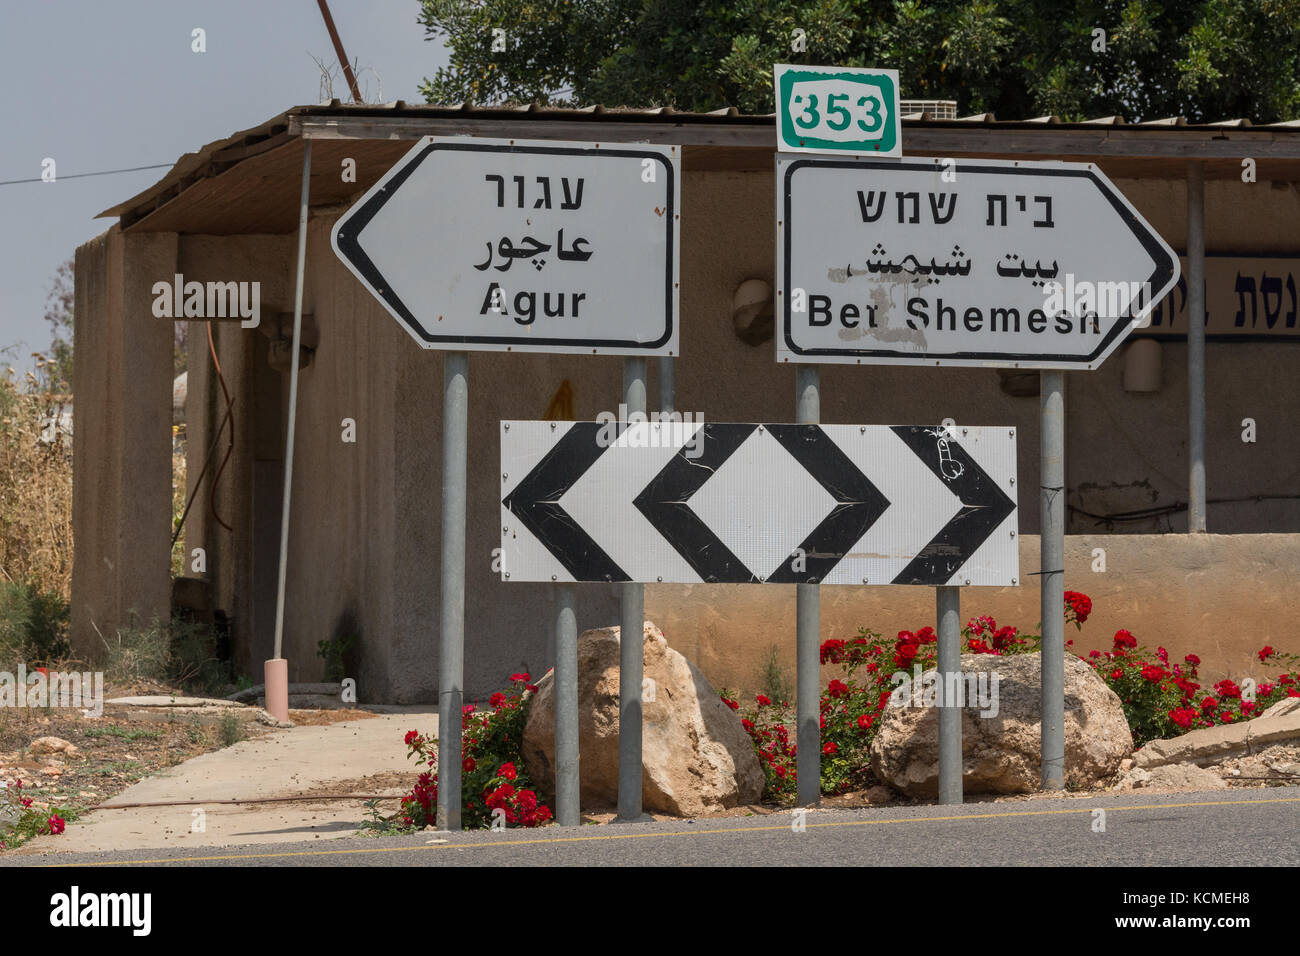 La signalisation routière près de l'Agur Winery, Agur,.Israël Banque D'Images